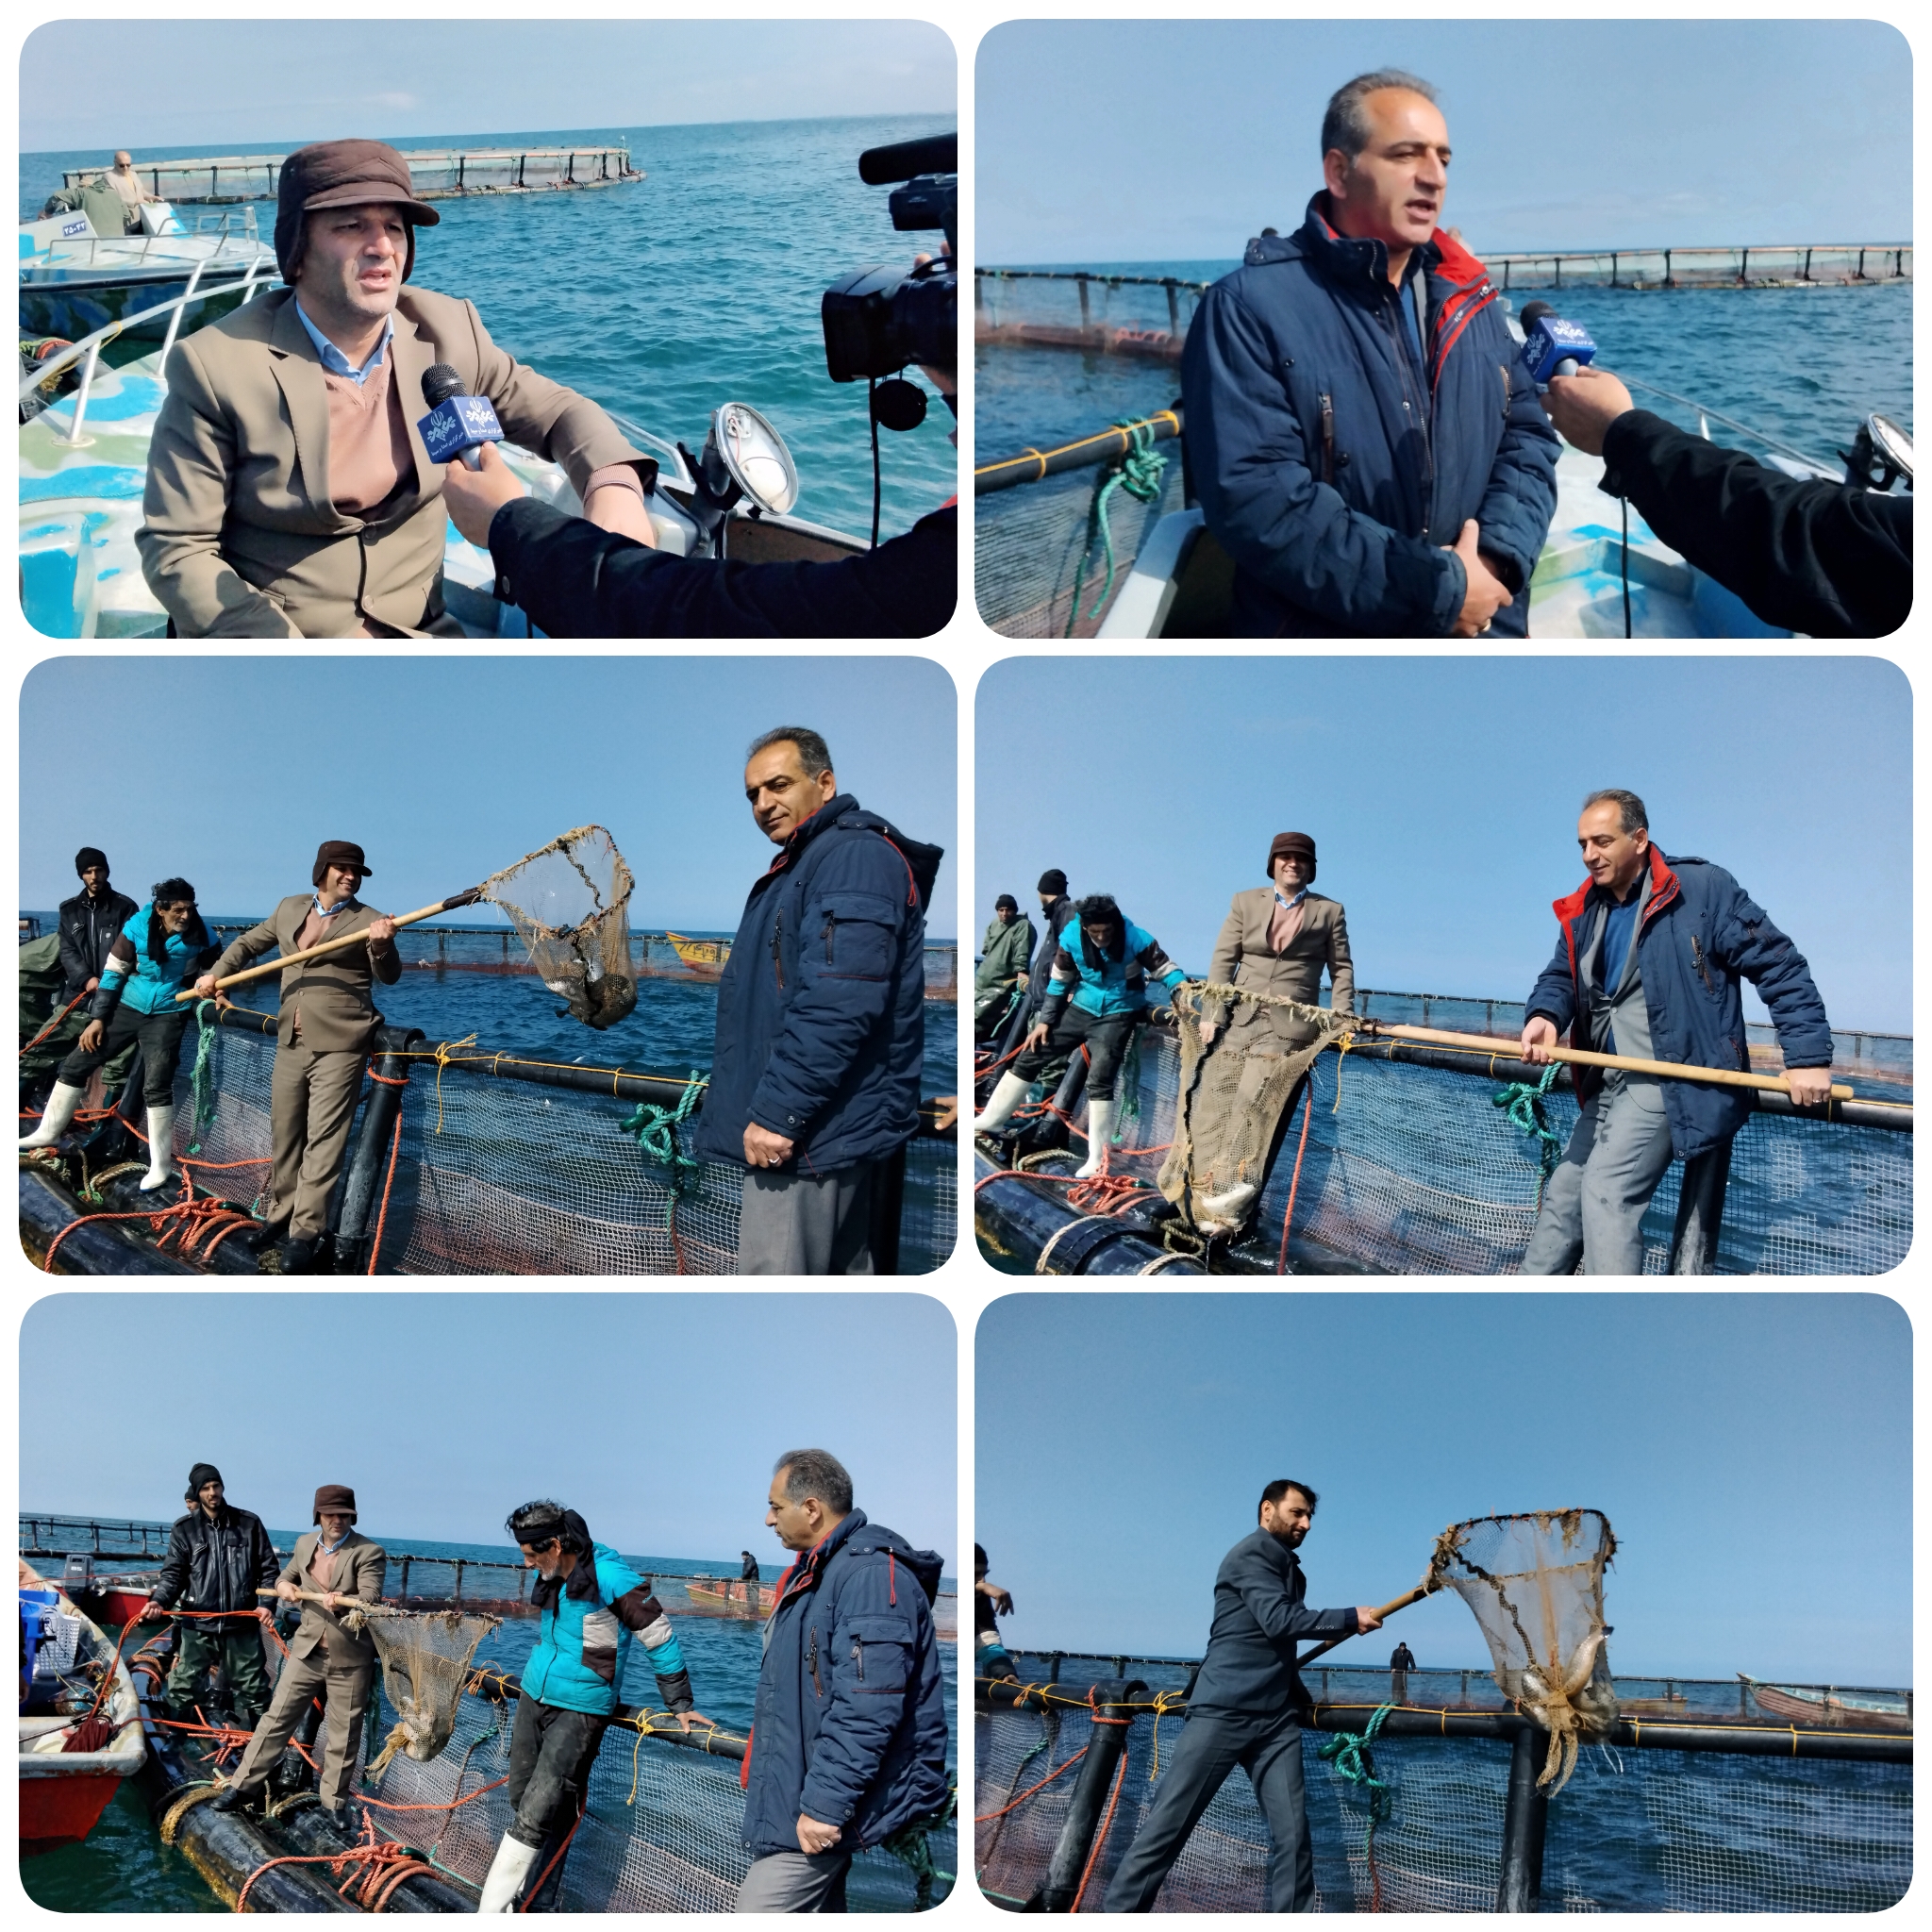 مدیرکل شیلات مازندران امروز در جویبار خبرداد:  سومین شرکت تعاونی صیادی پره در شهرستان جویبار، تولید ماهی در قفسهای دریایی دراستان مازندران را آغاز نمود.